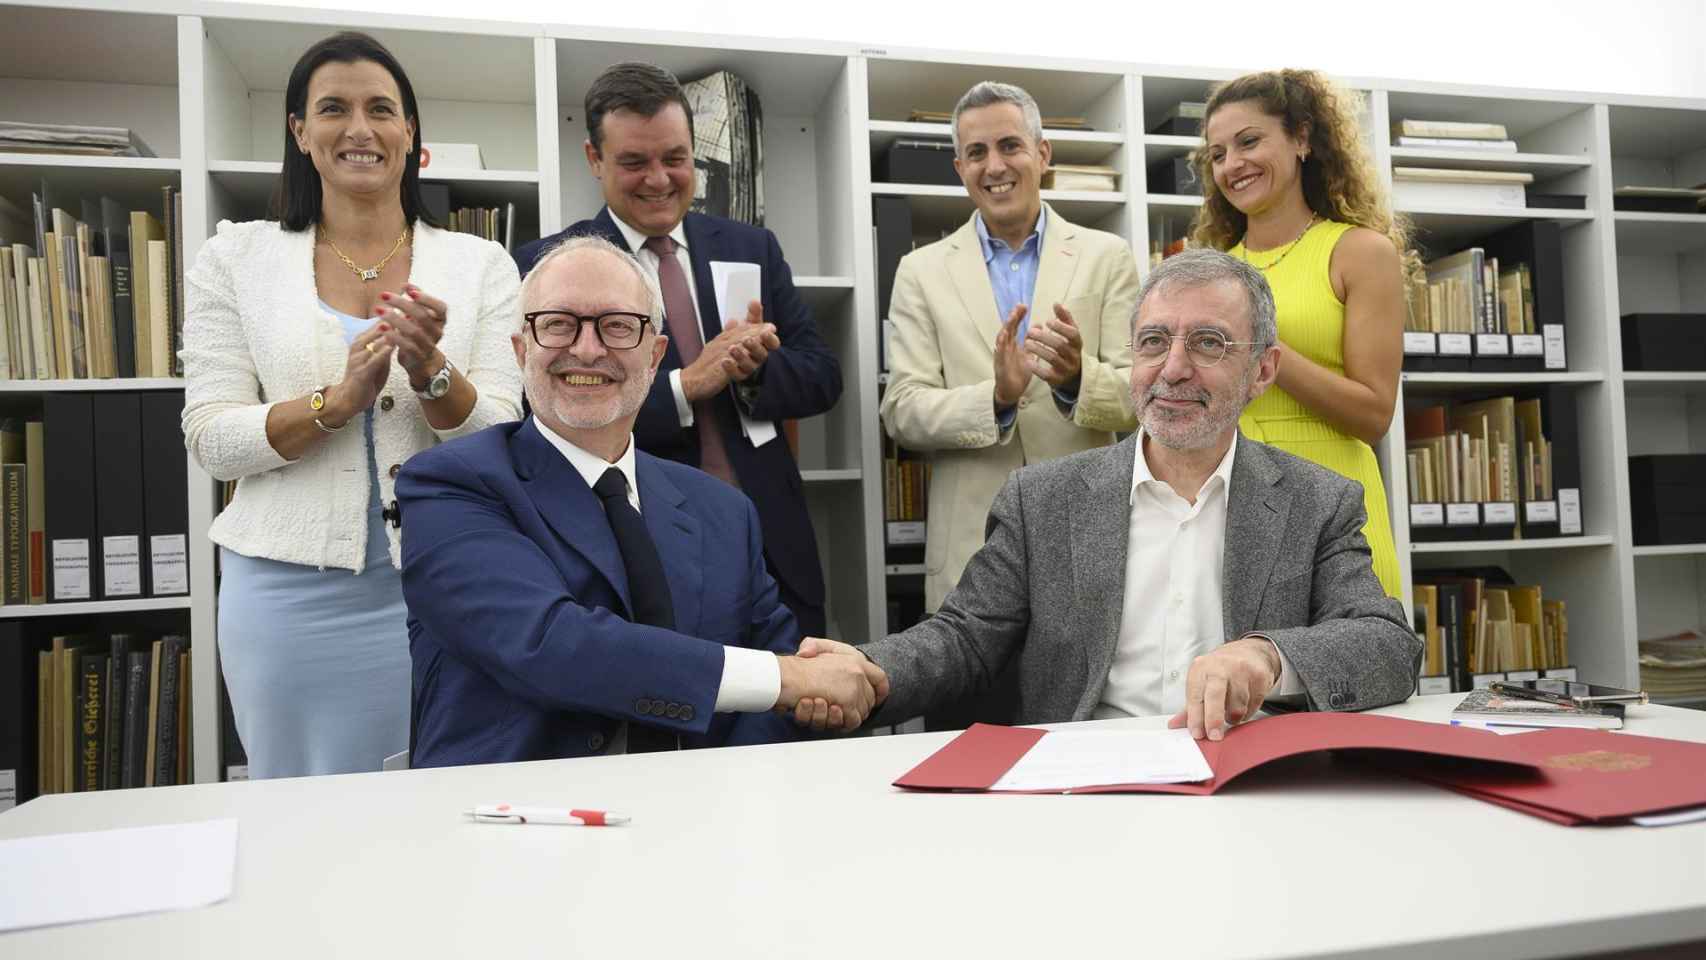 Acto de firma de la compra del Archivo Lafuente, este miércoles. Sentados, José María Lafuente y Manuel Borja-Villel. Foto: EFE/Pedro Puente Hoyos